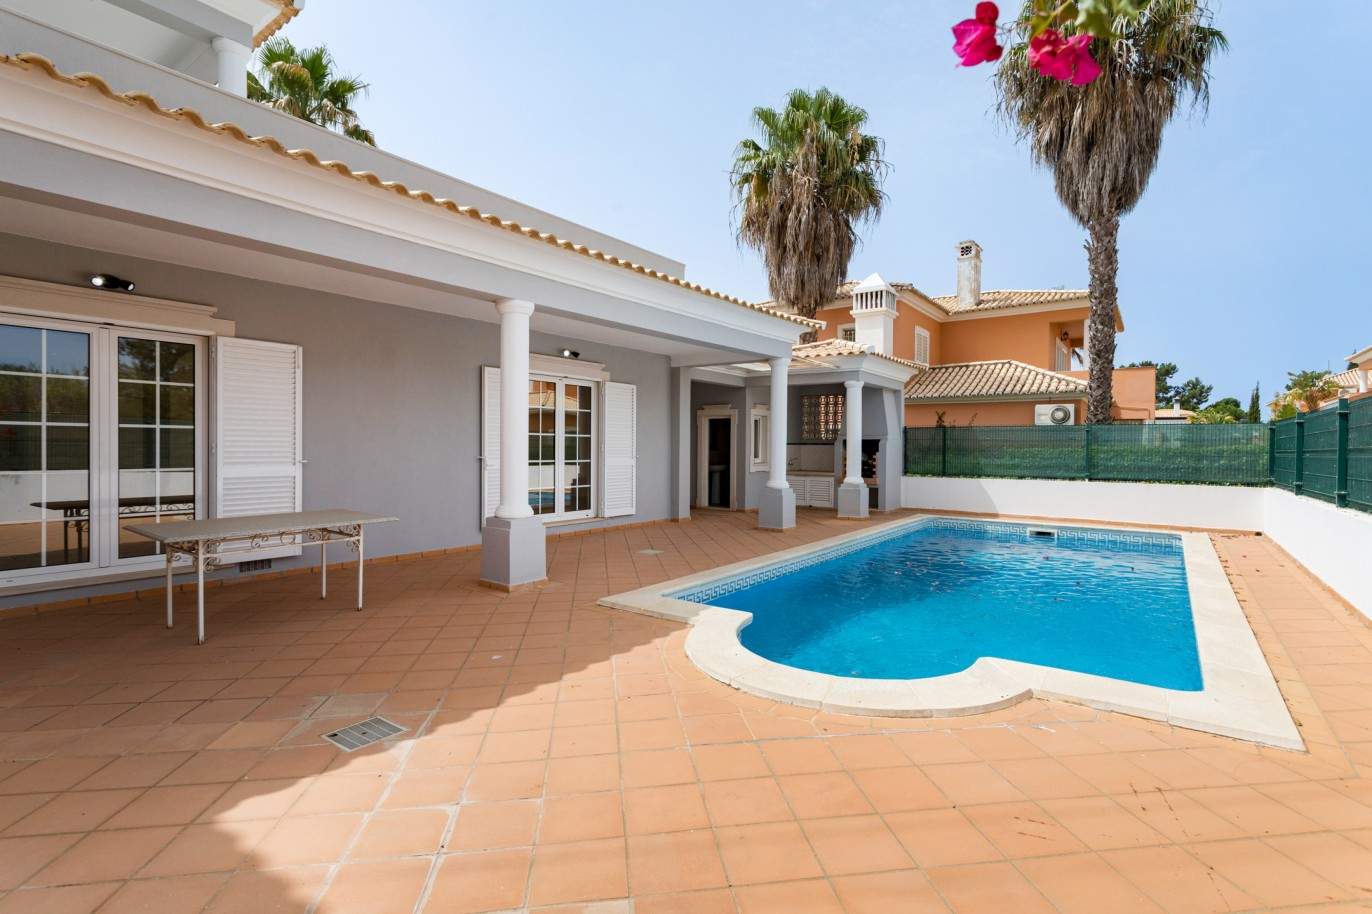 Moradia T4 com piscina, para venda em Quarteira, Algarve_201732